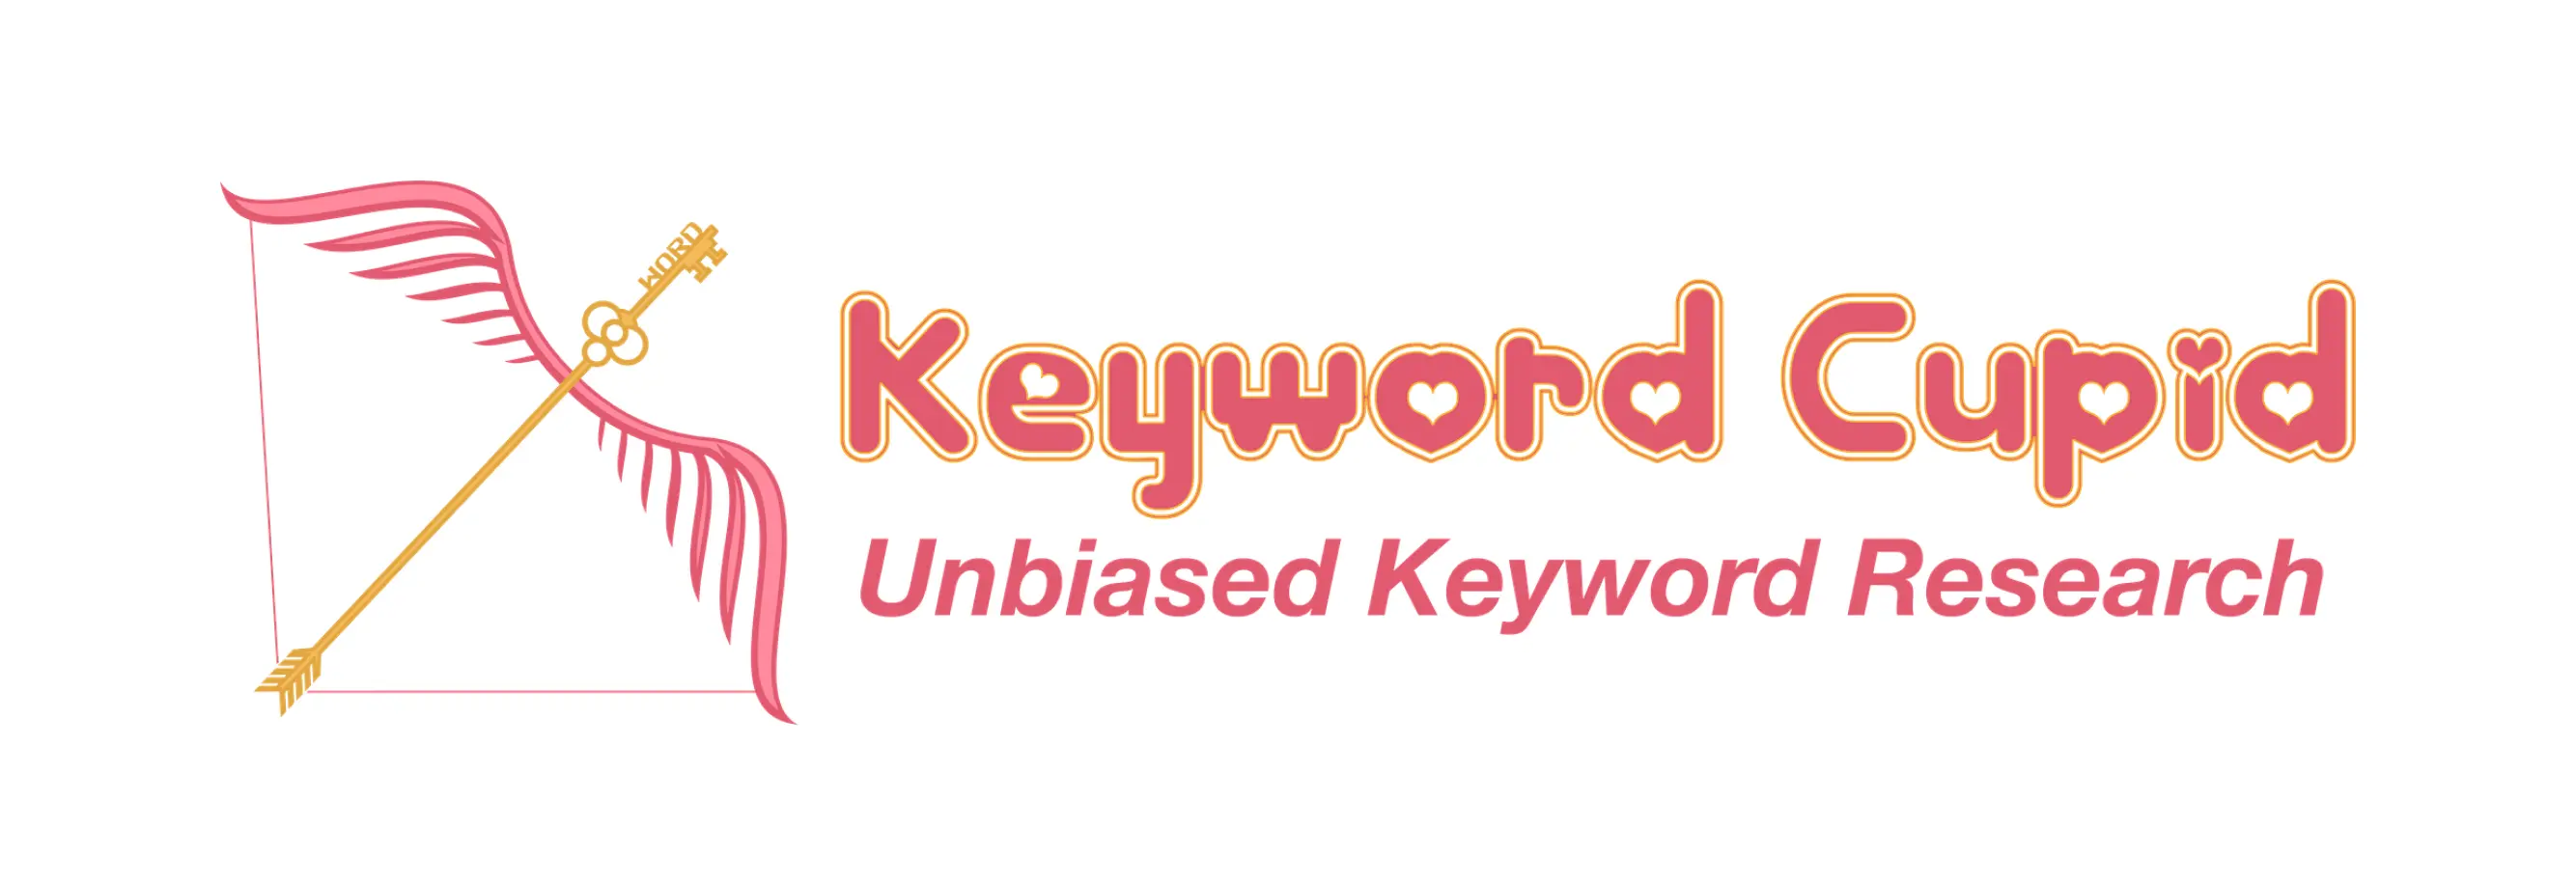 logo Keyword Cupid